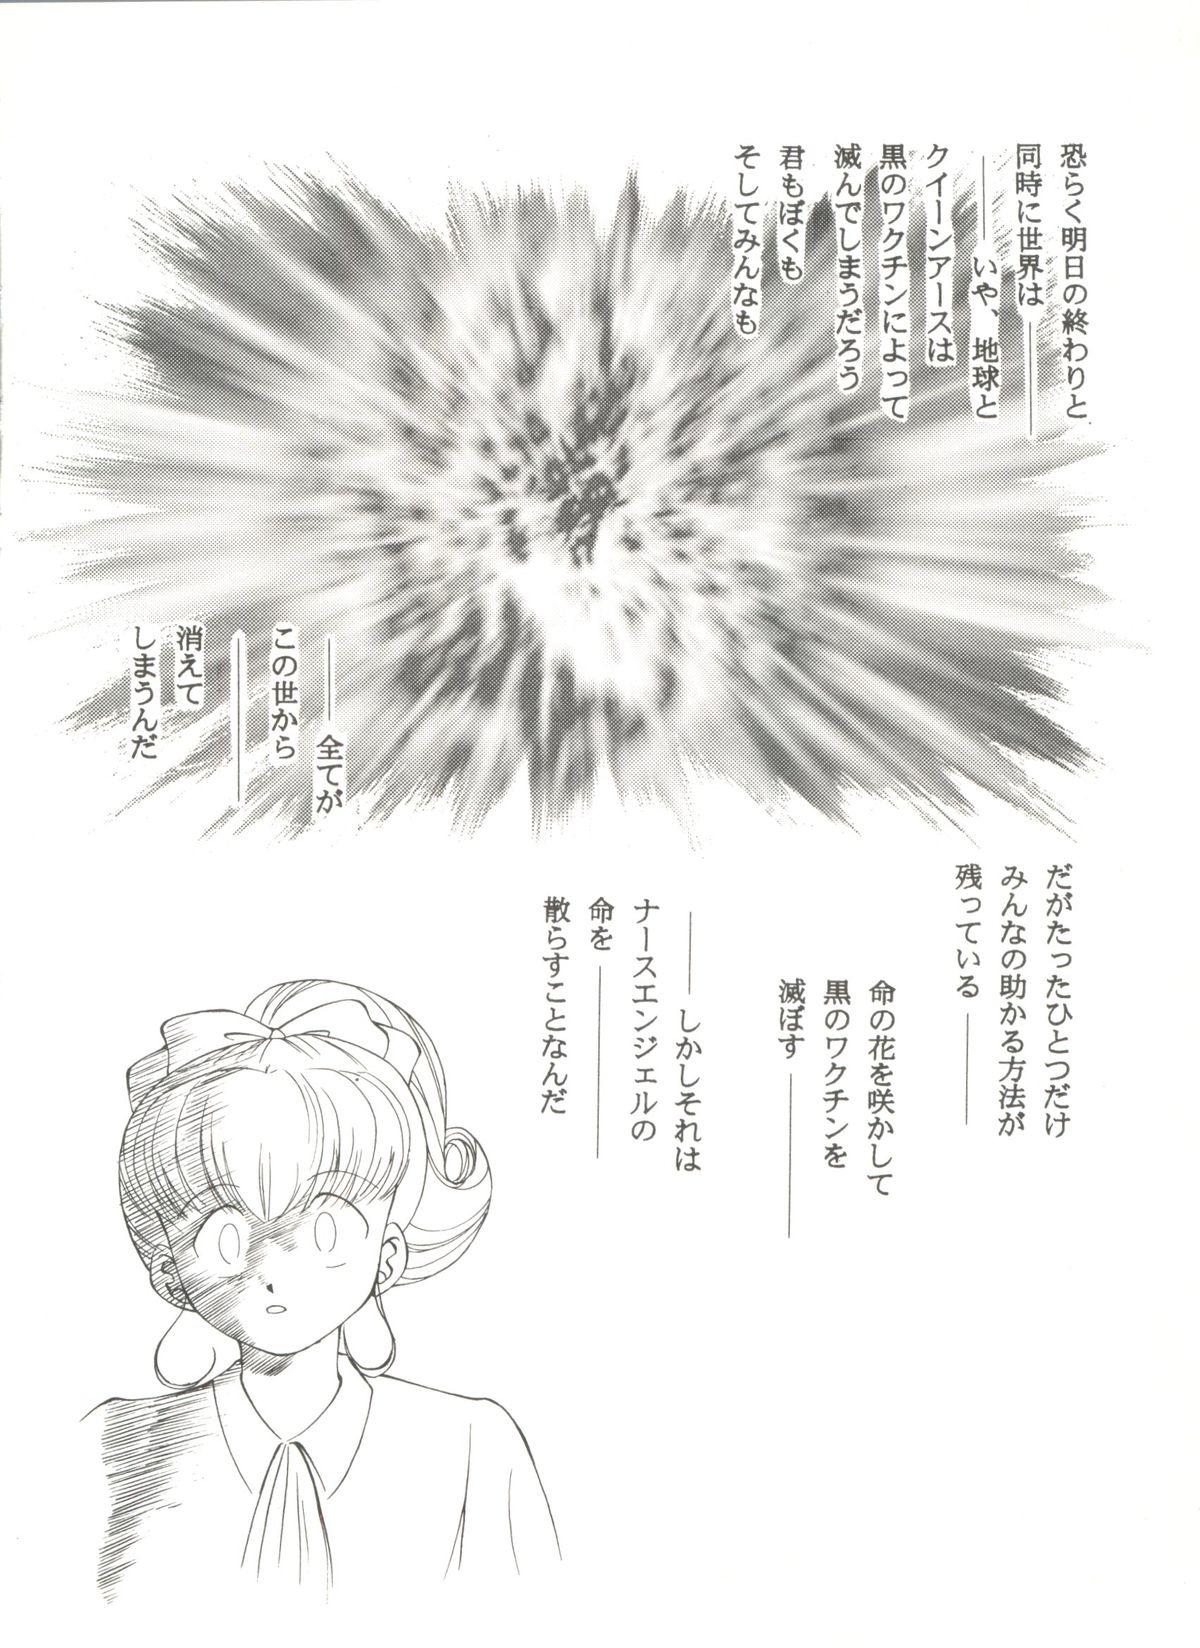 Doujin Anthology Bishoujo Gumi 6 13